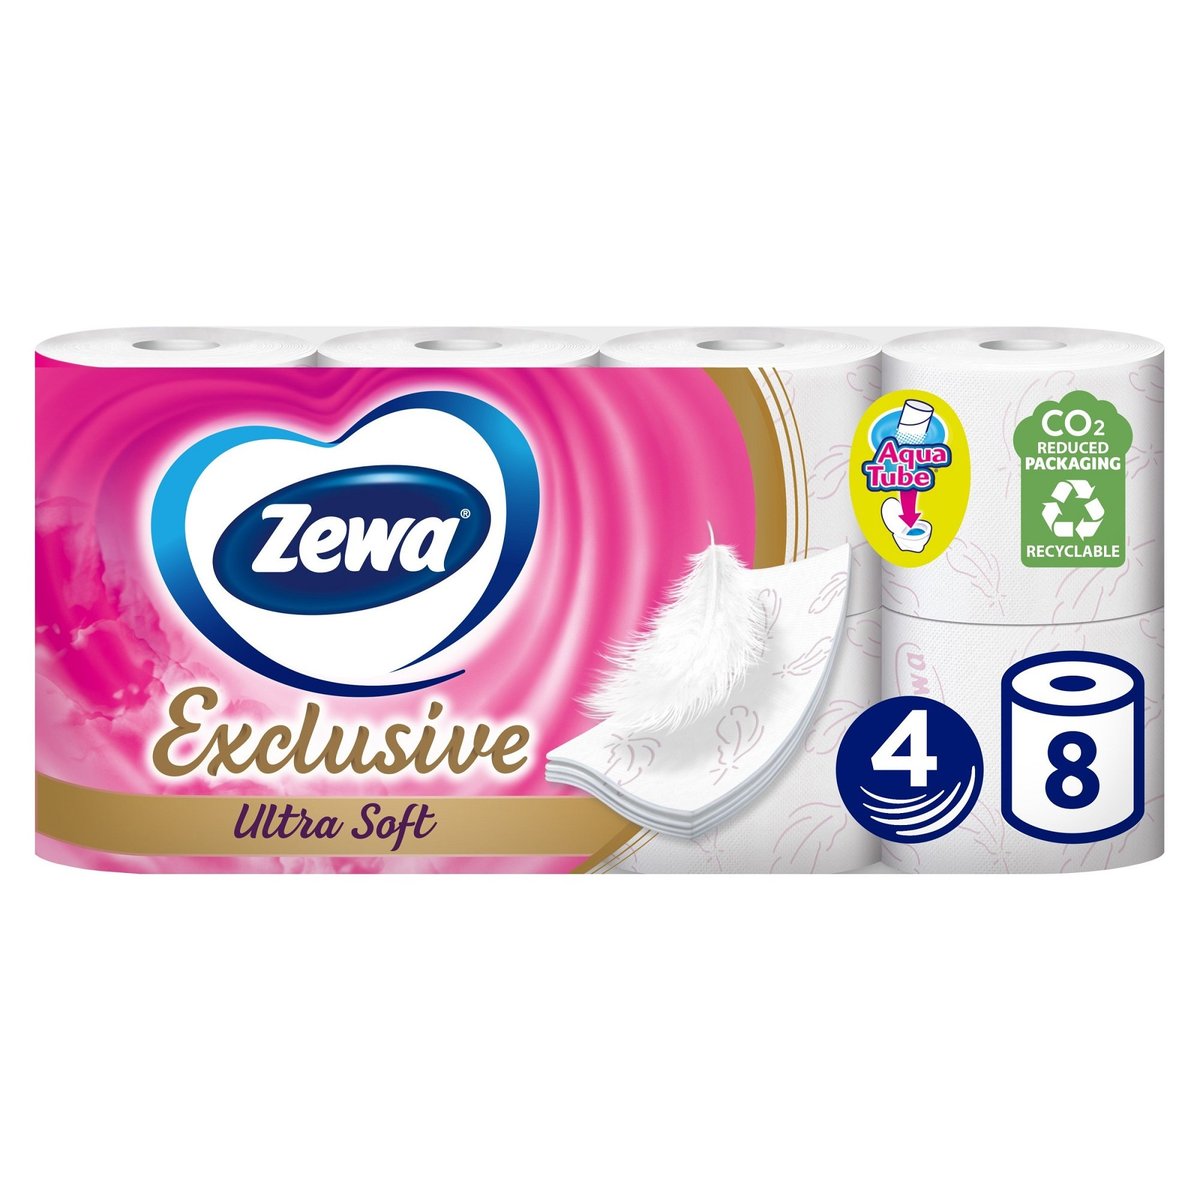 Zewa Exclusive Ultra Soft toaletní papír 4vrstvý, 8 ks